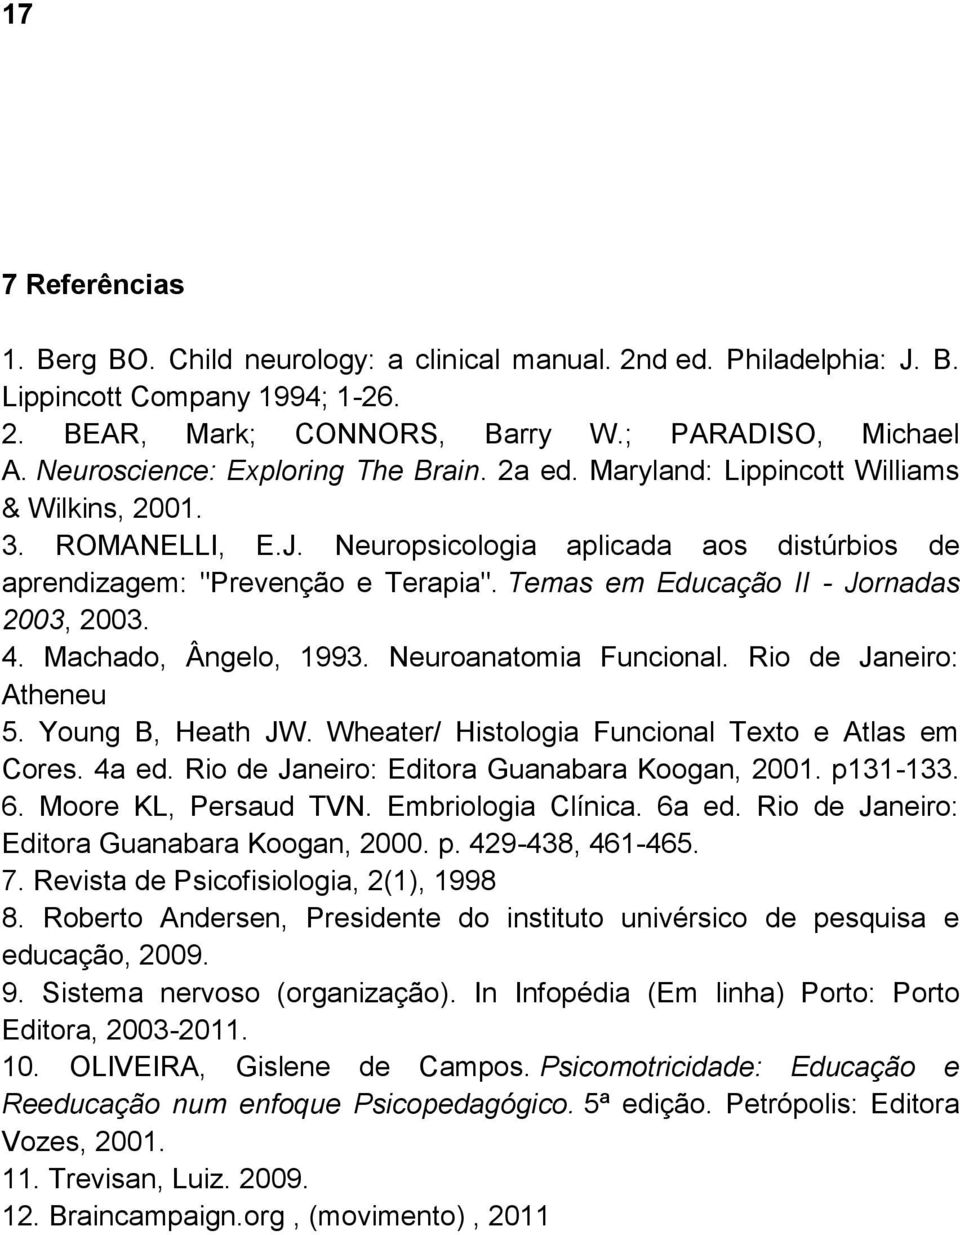 Temas em Educação II - Jornadas 2003, 2003. 4. Machado, Ângelo, 1993. Neuroanatomia Funcional. Rio de Janeiro: Atheneu 5. Young B, Heath JW. Wheater/ Histologia Funcional Texto e Atlas em Cores.